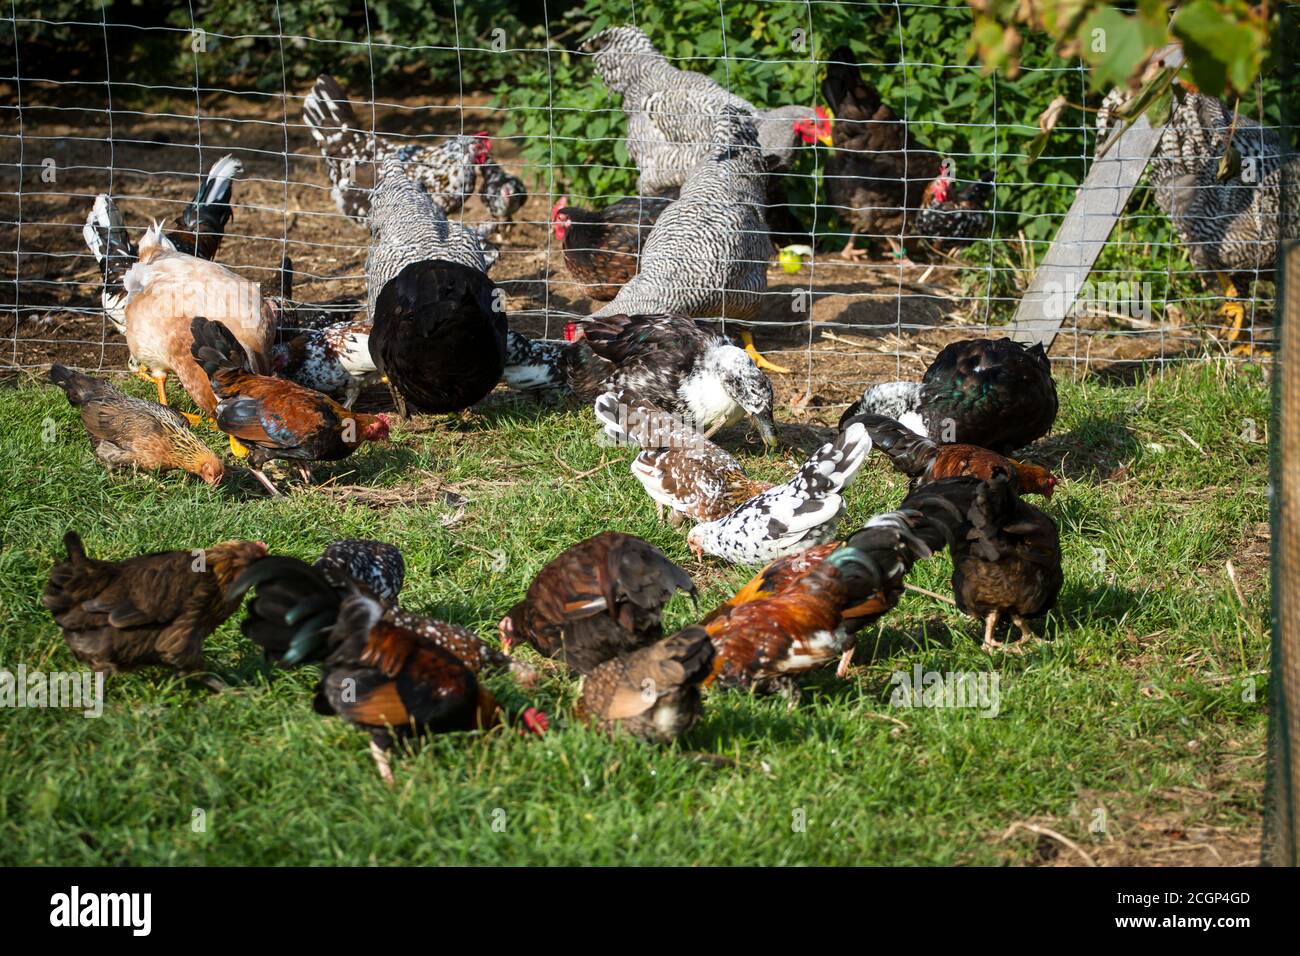 Aves de corral (pollos y patos) en una granja orgánica Foto de stock